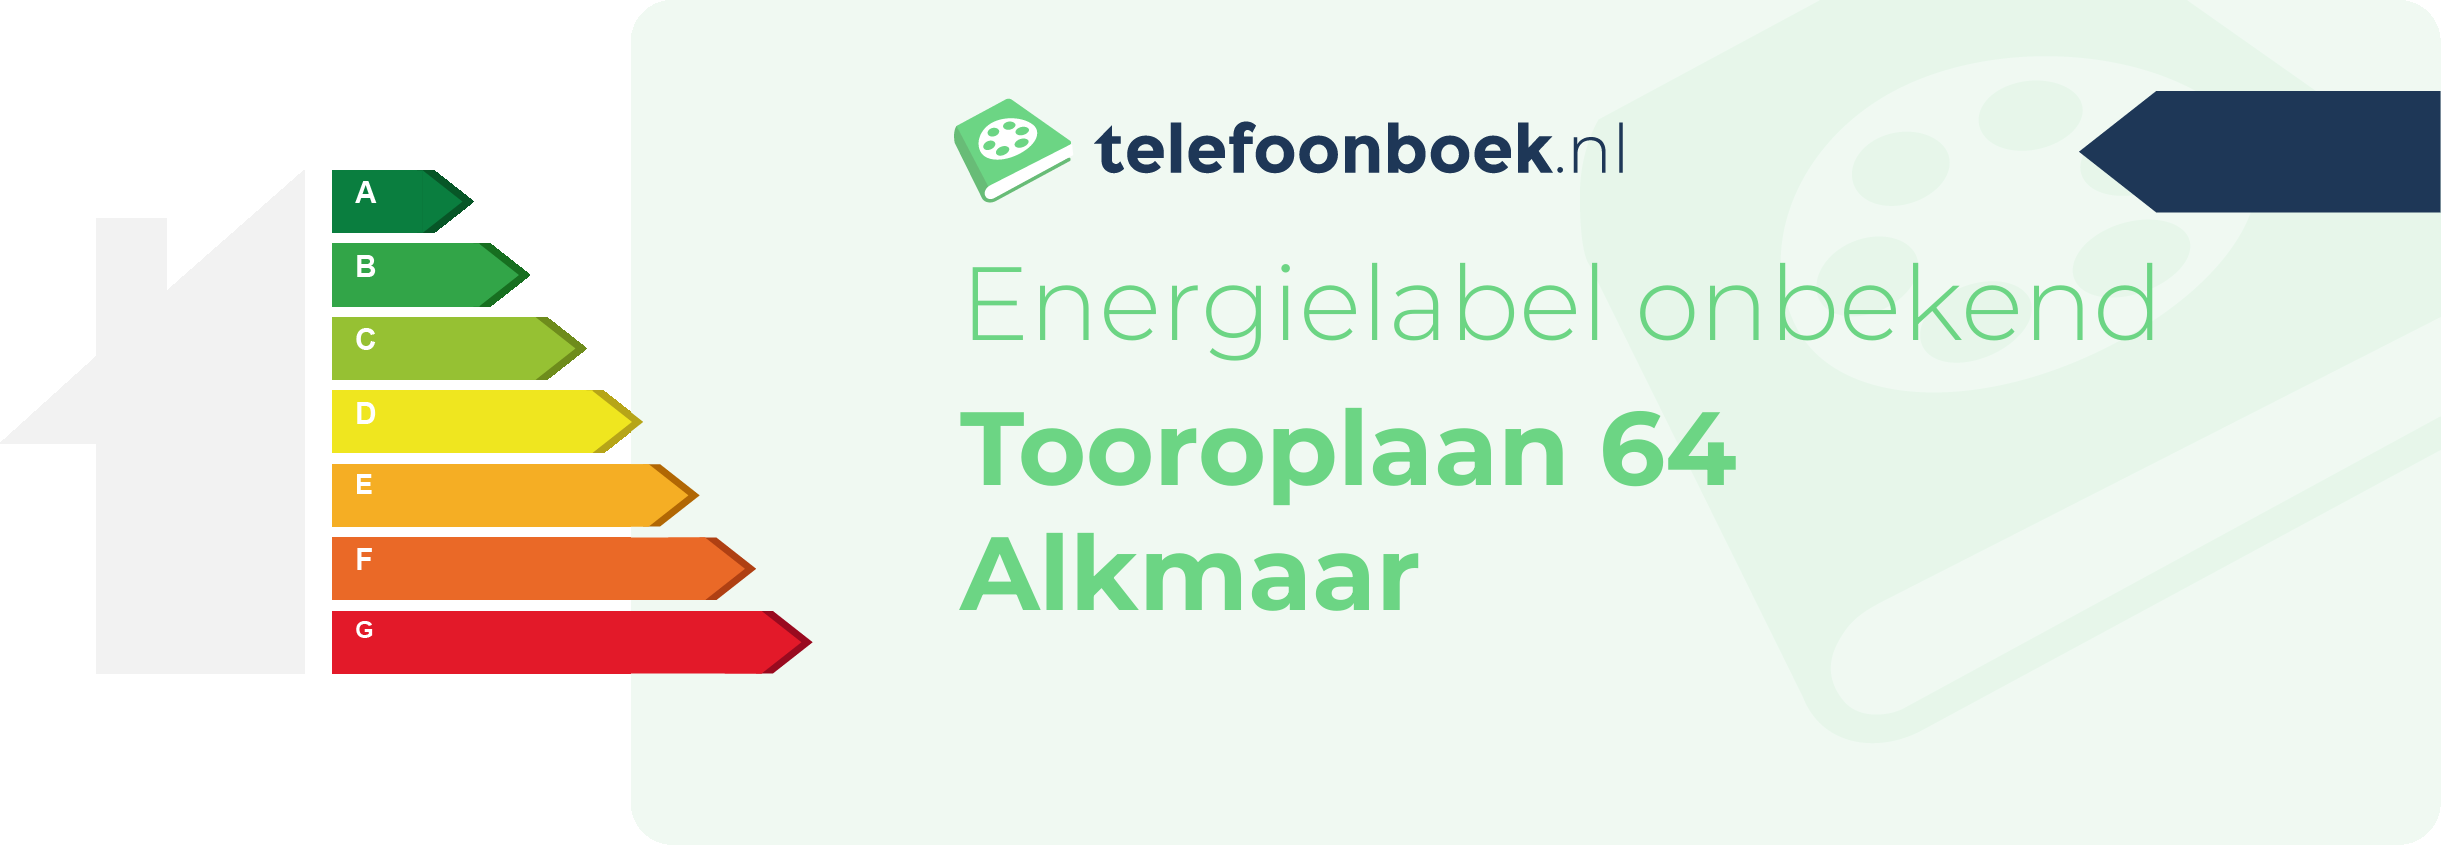 Energielabel Tooroplaan 64 Alkmaar